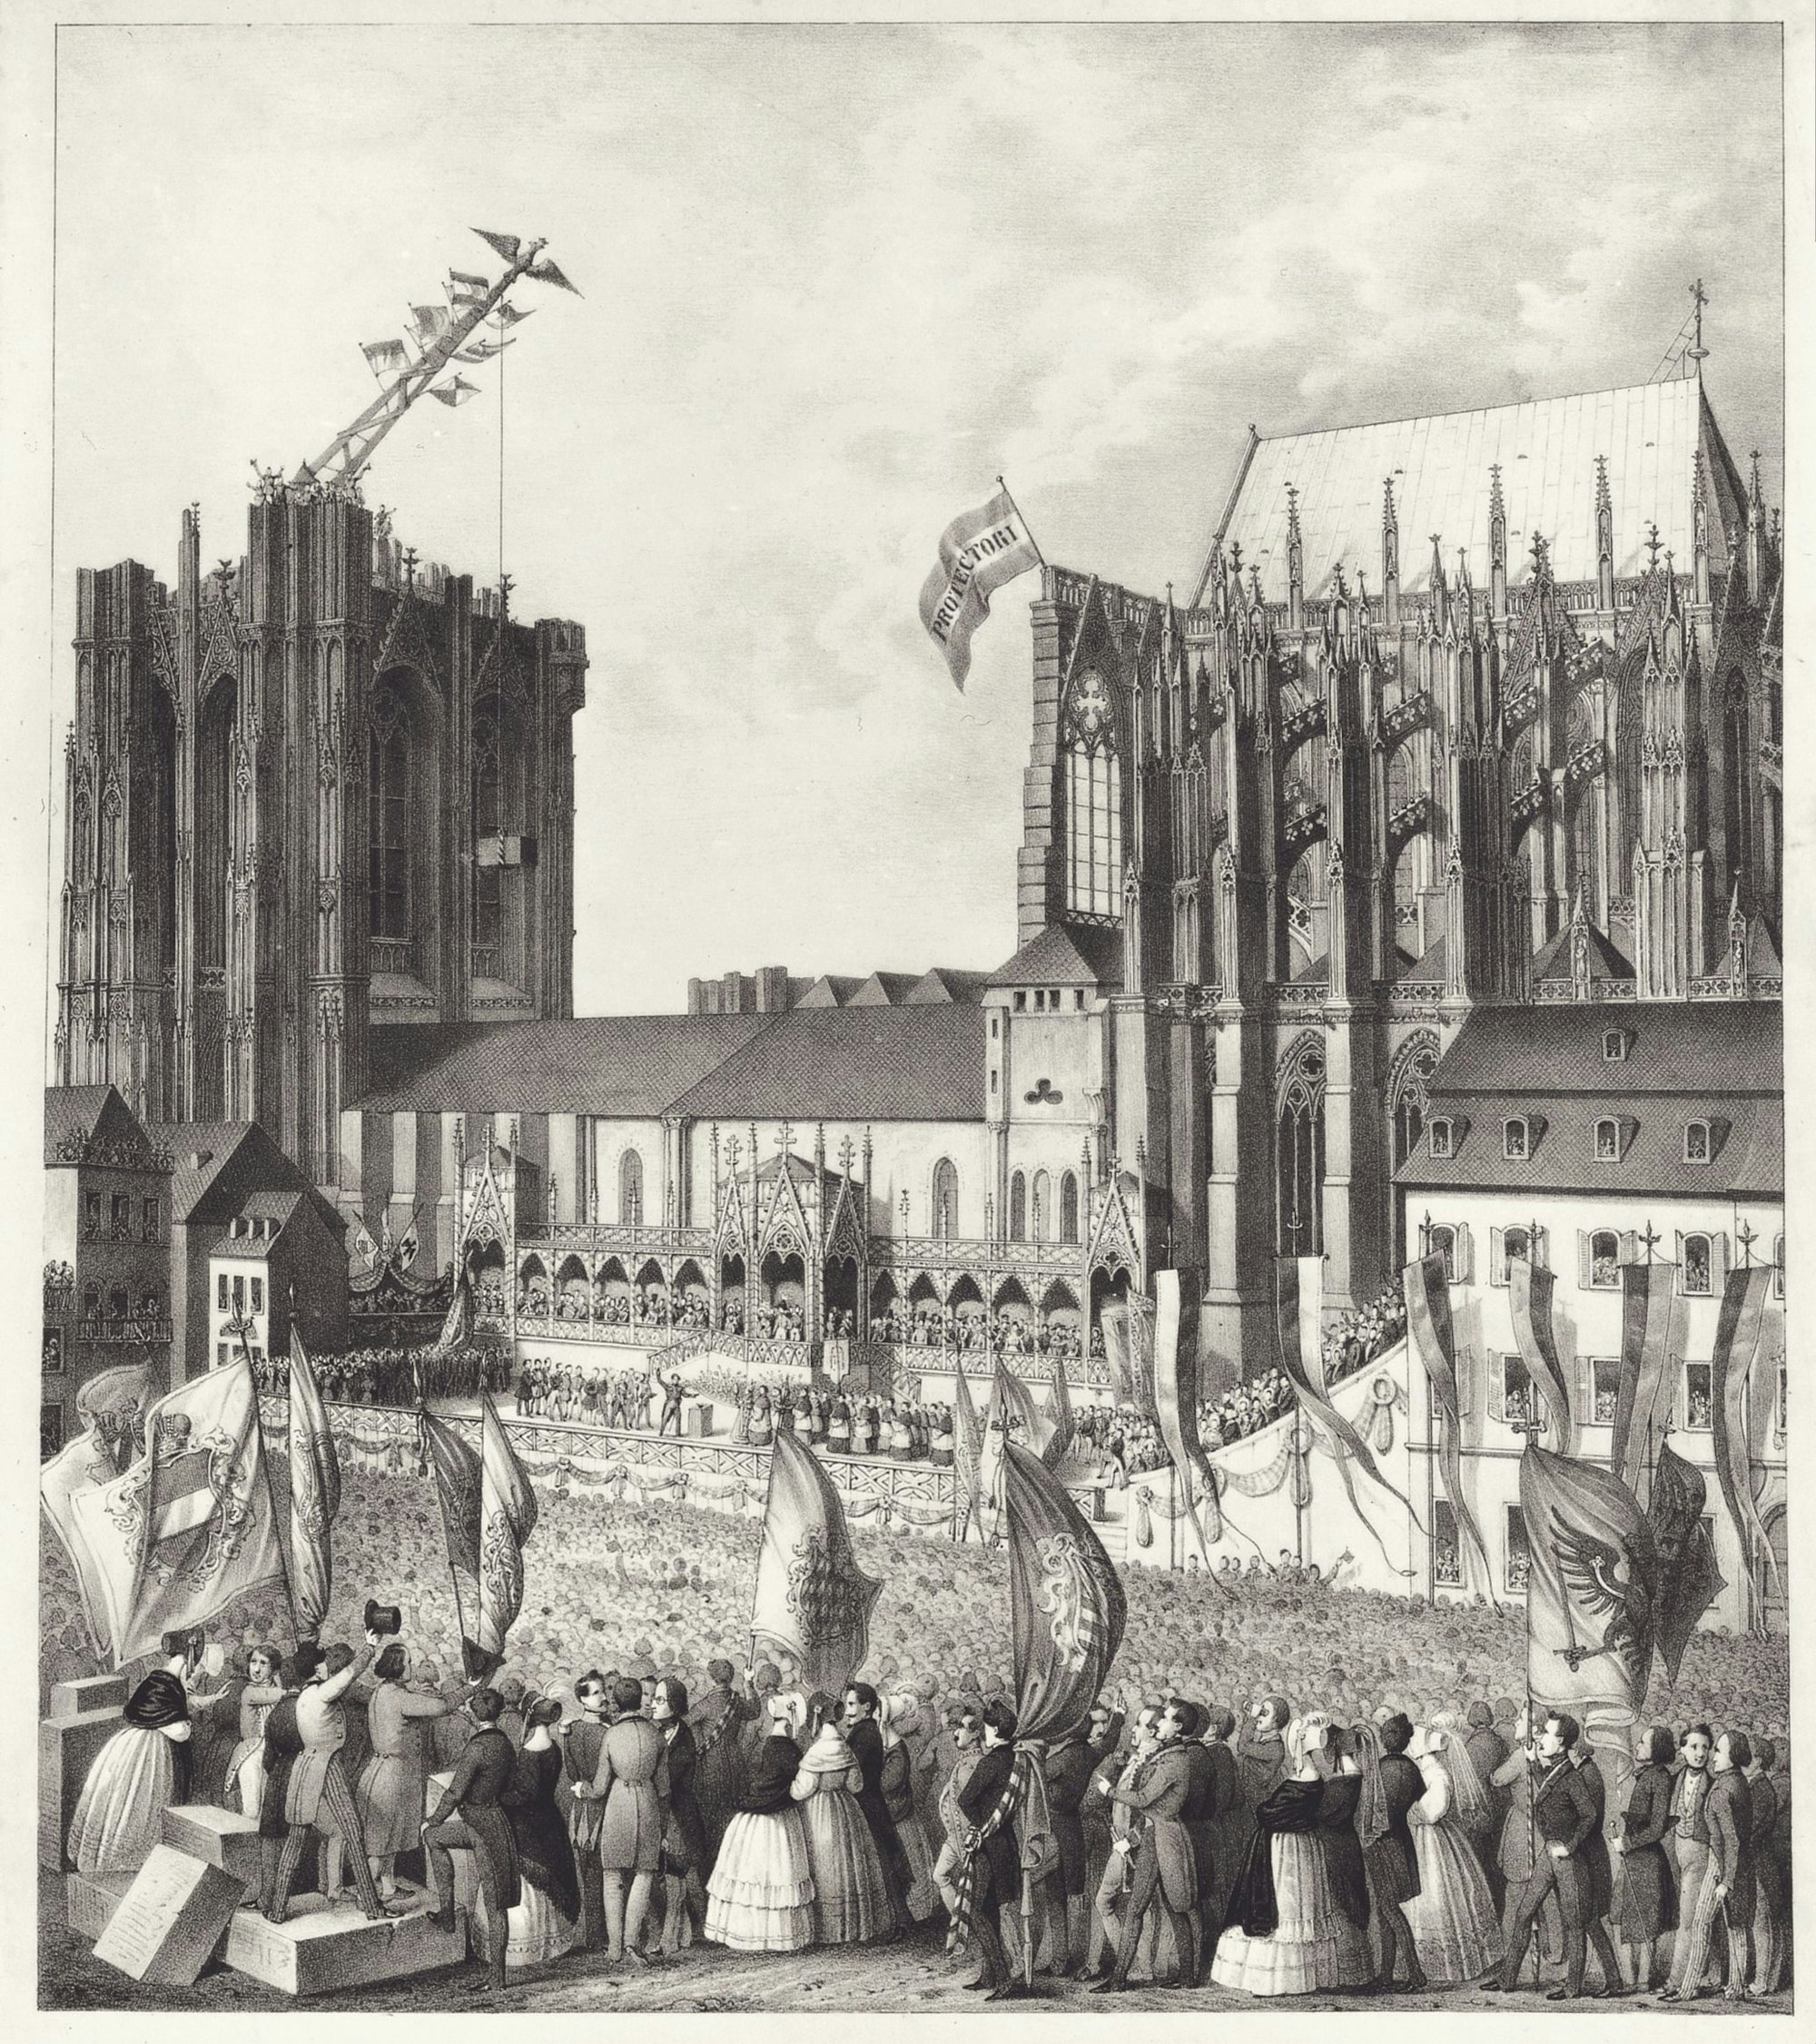 Köln, Dombauarchiv, Lithographie, Feier zur Grundsteinlegung für den Weiterbau am 4. September 1842, nach Georg Osterwald 1842